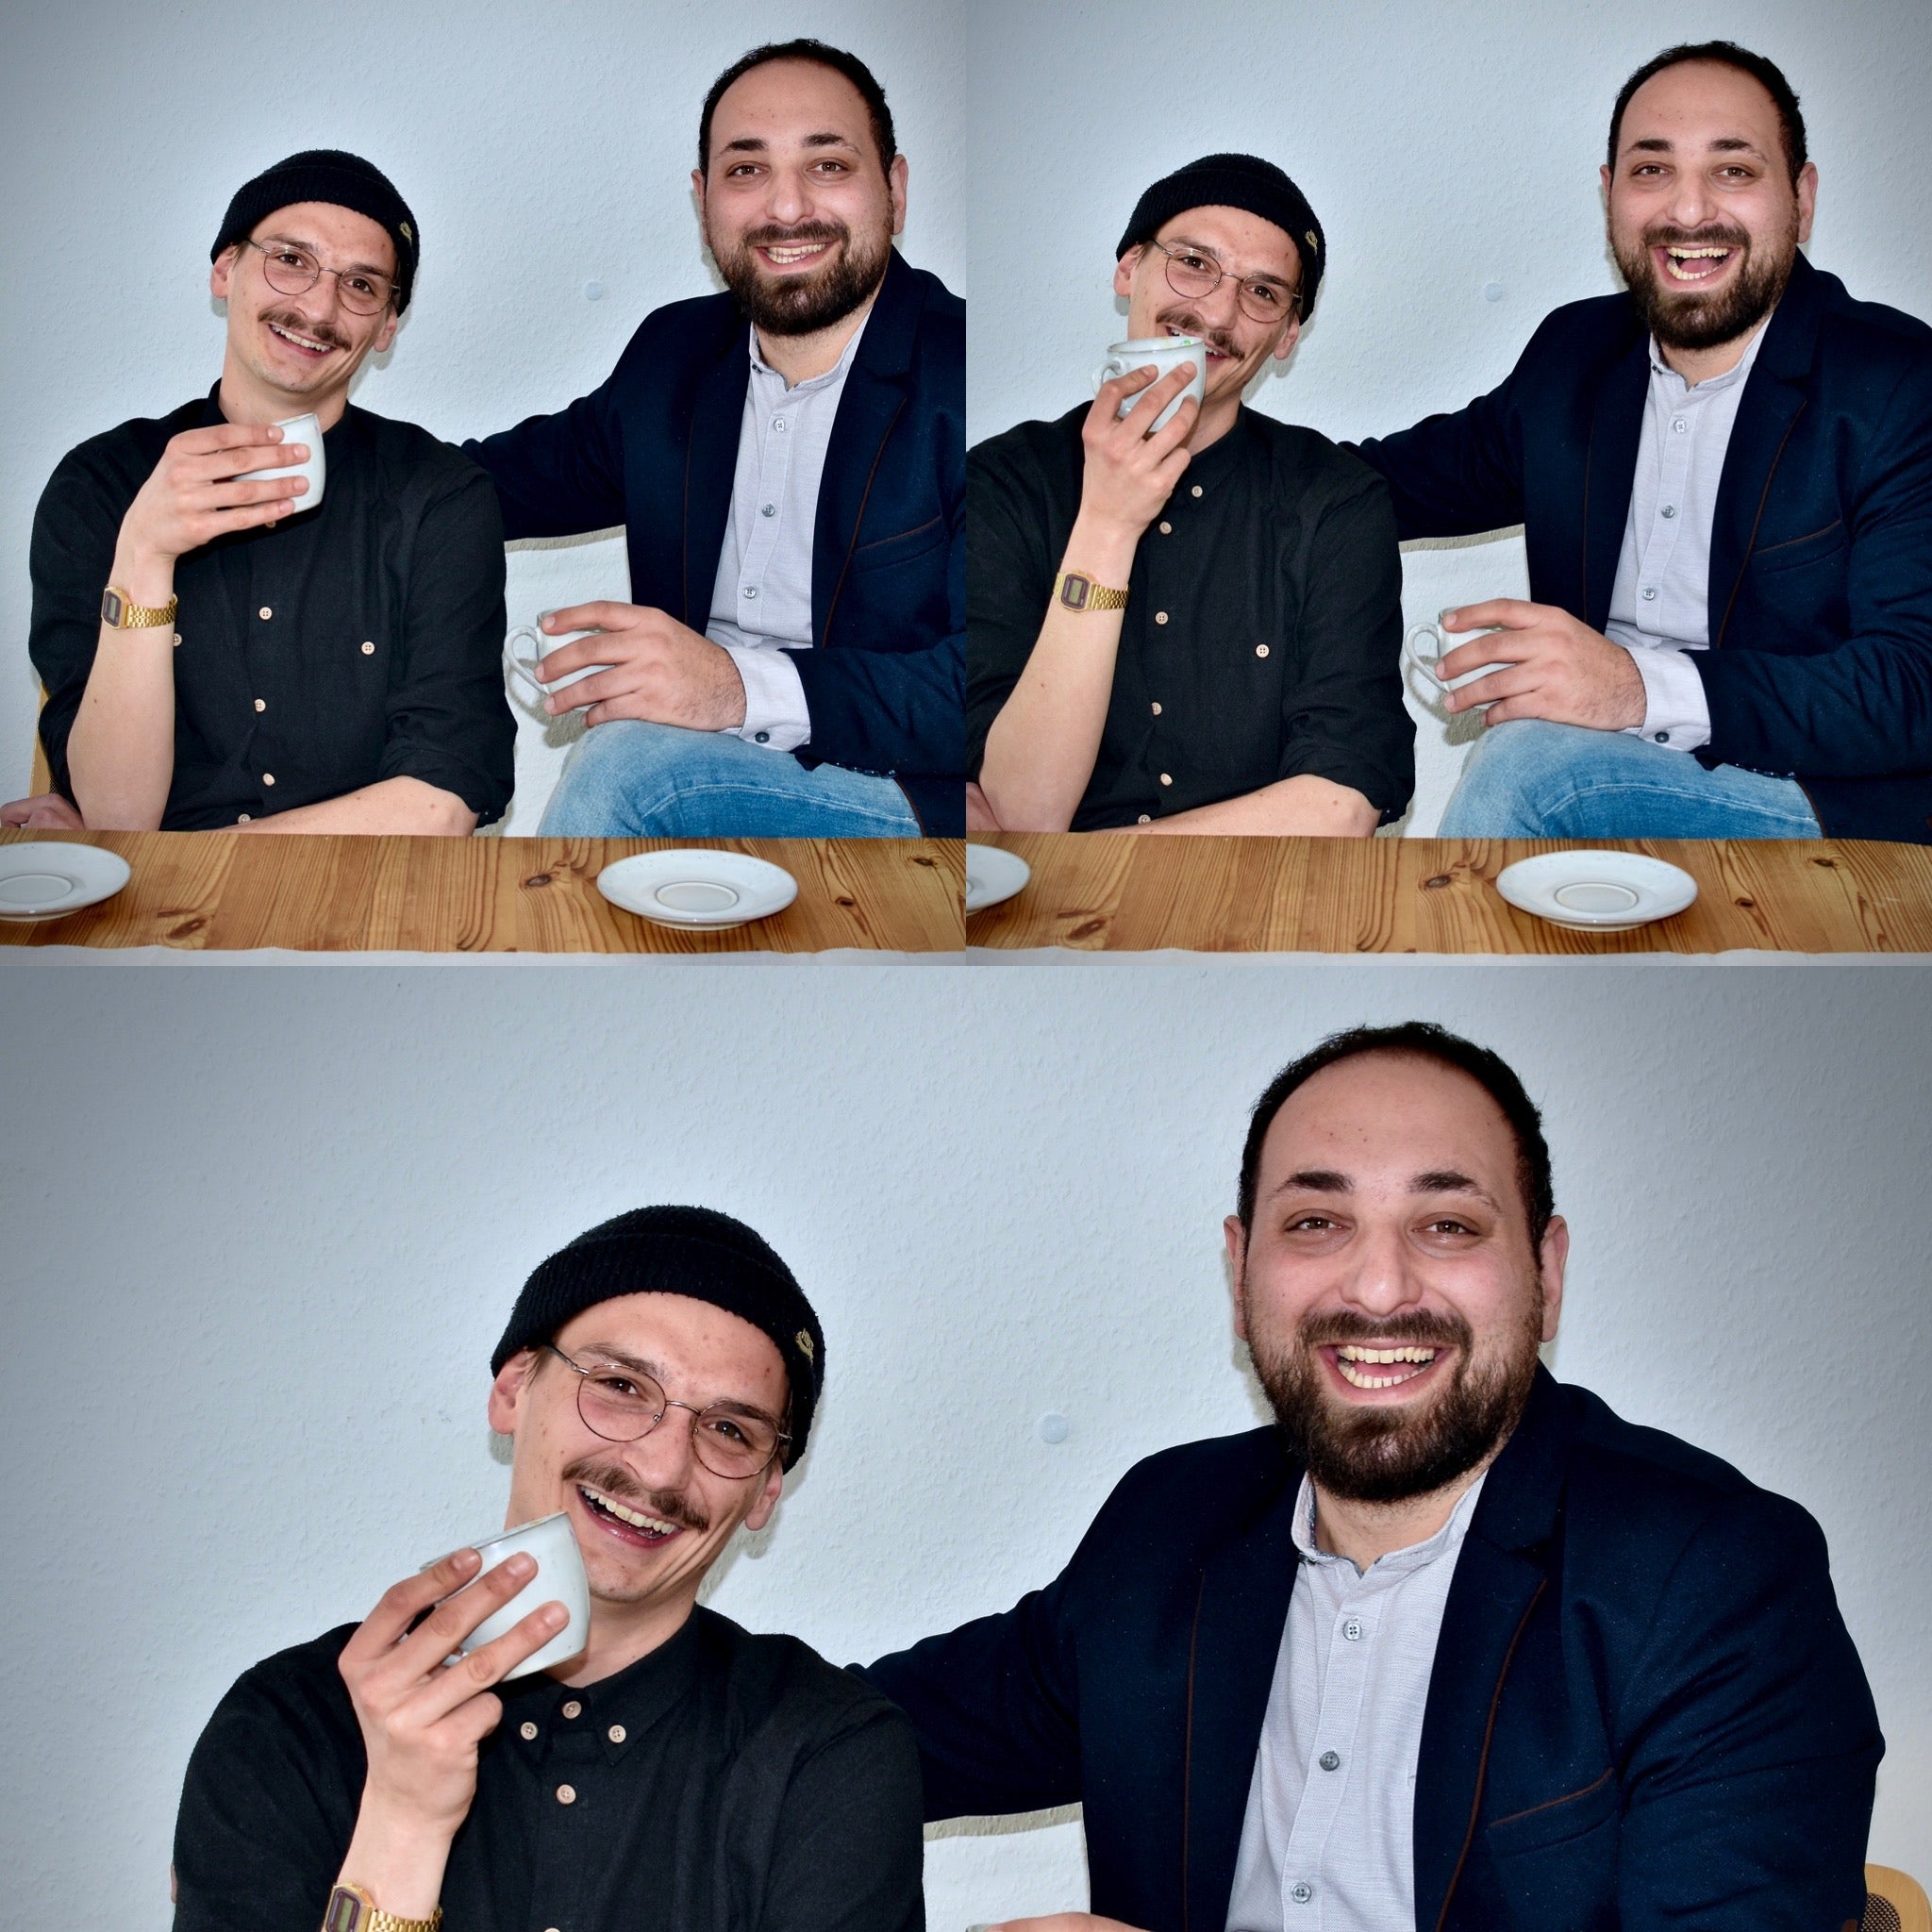 Zu sehen sind die Gruender Peter Scherer und Burhan Yalcin die nebeneinander mit Kaffee Tassen an einem Tisch sitzen